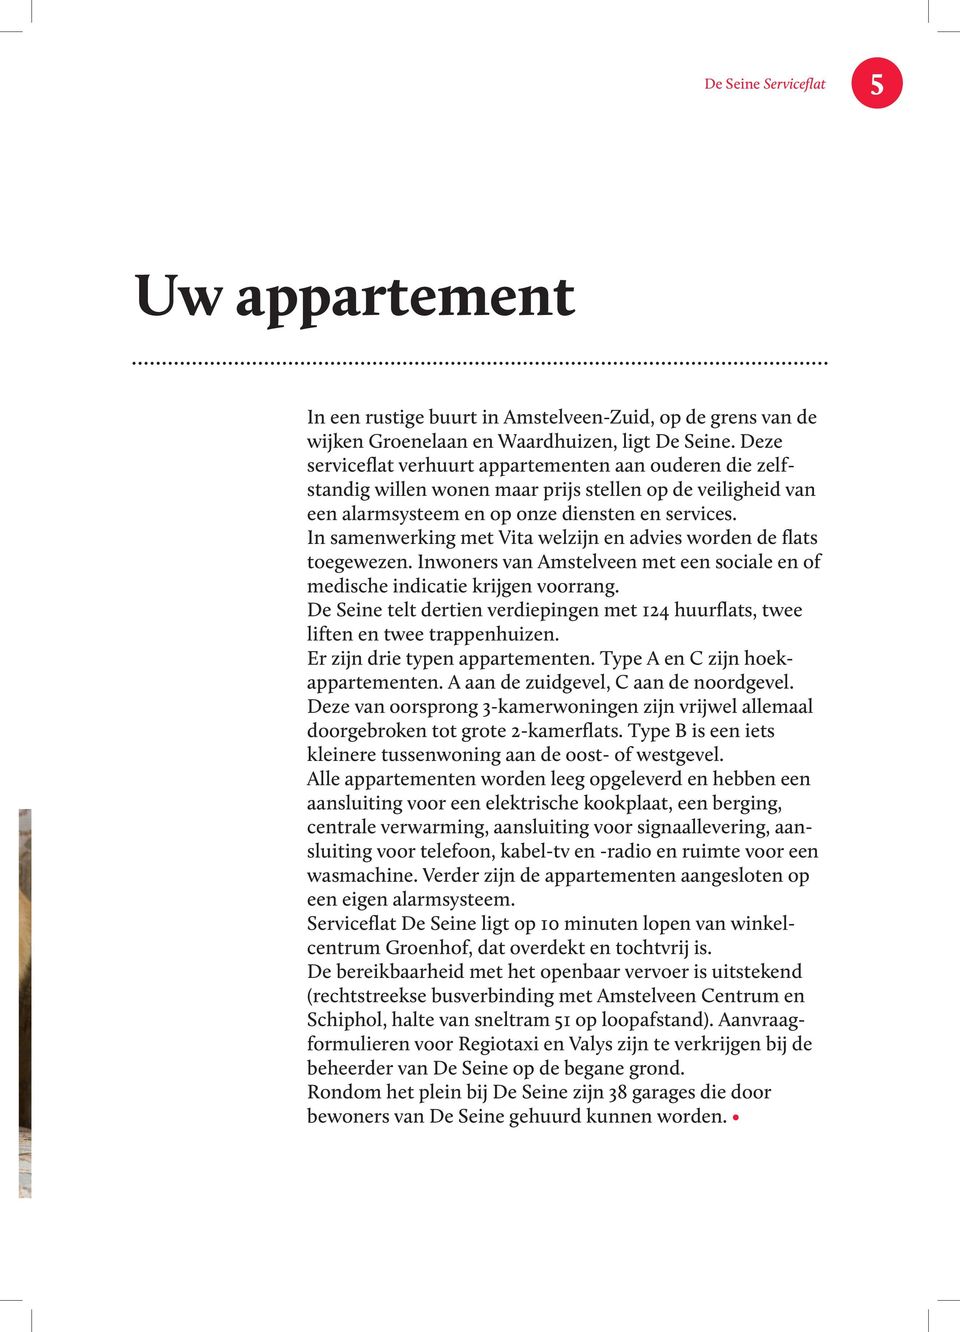 In samenwerking met Vita welzijn en advies worden de flats toegewezen. Inwoners van Amstelveen met een sociale en of medische indicatie krijgen voorrang.